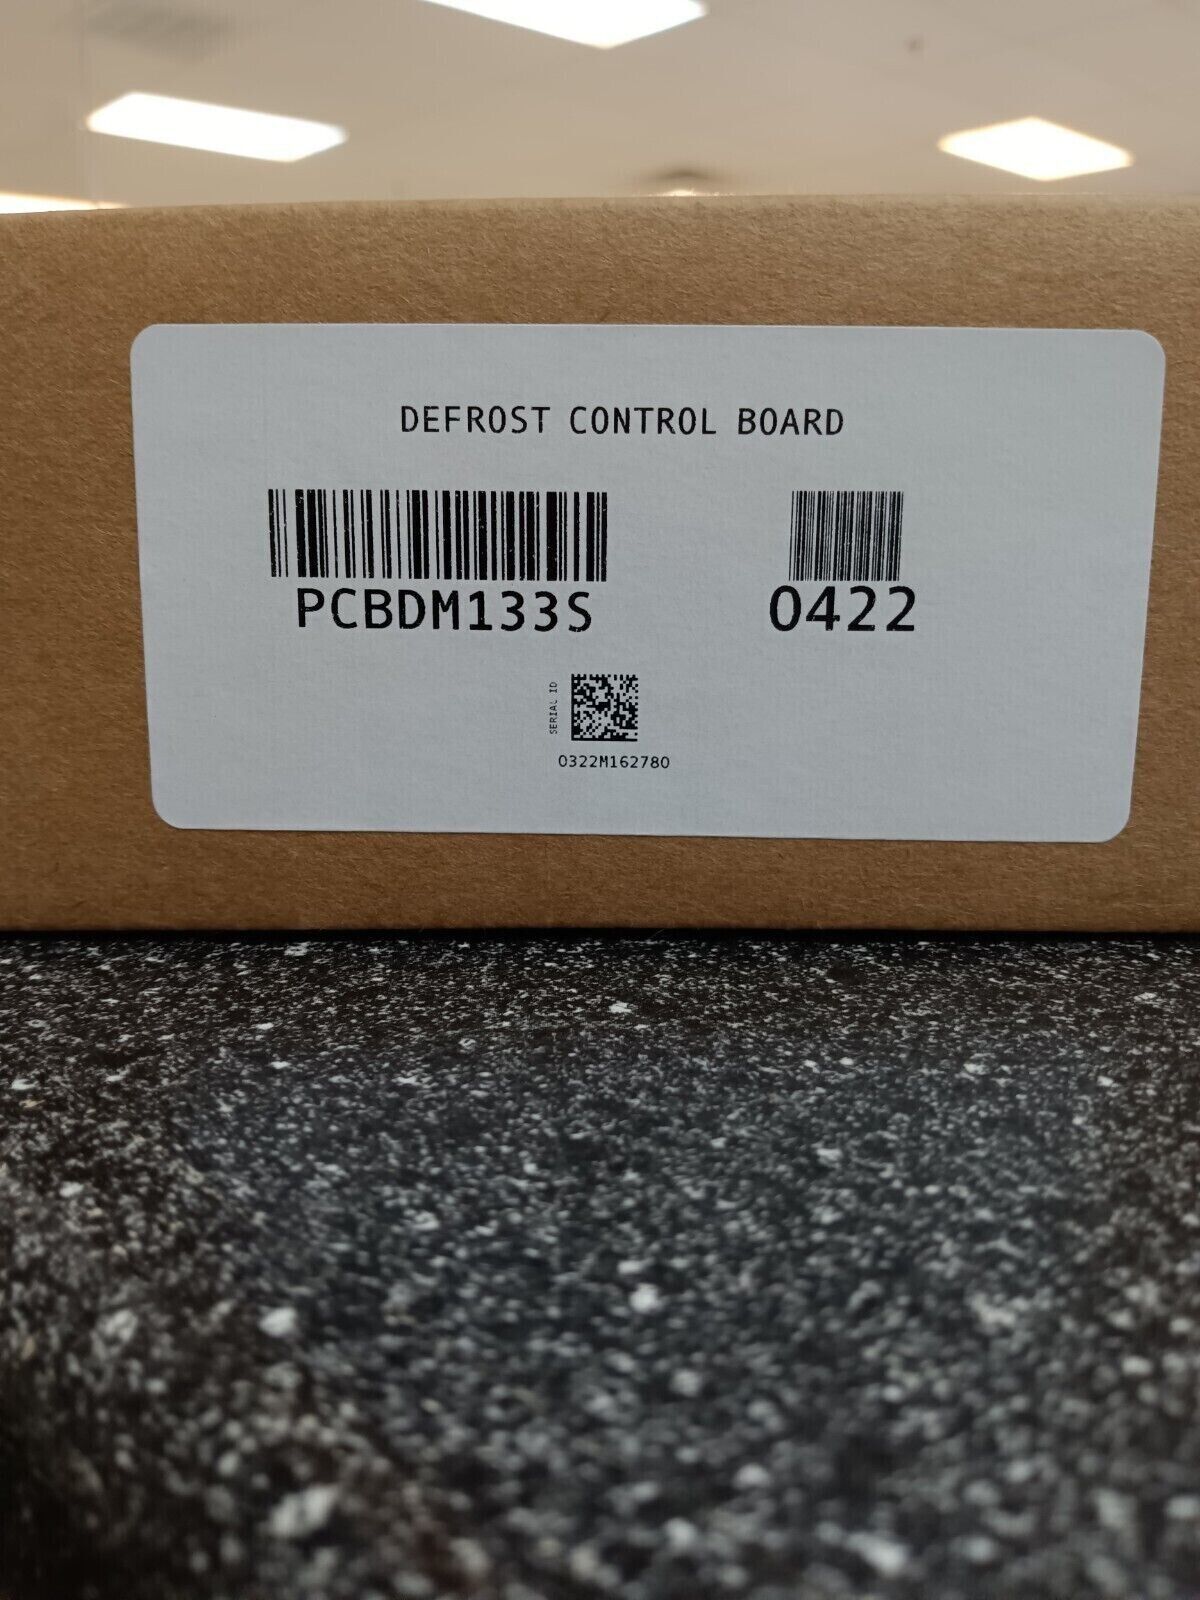 Goodman Heat Pump Defrost Control Board (PCBDM133S)